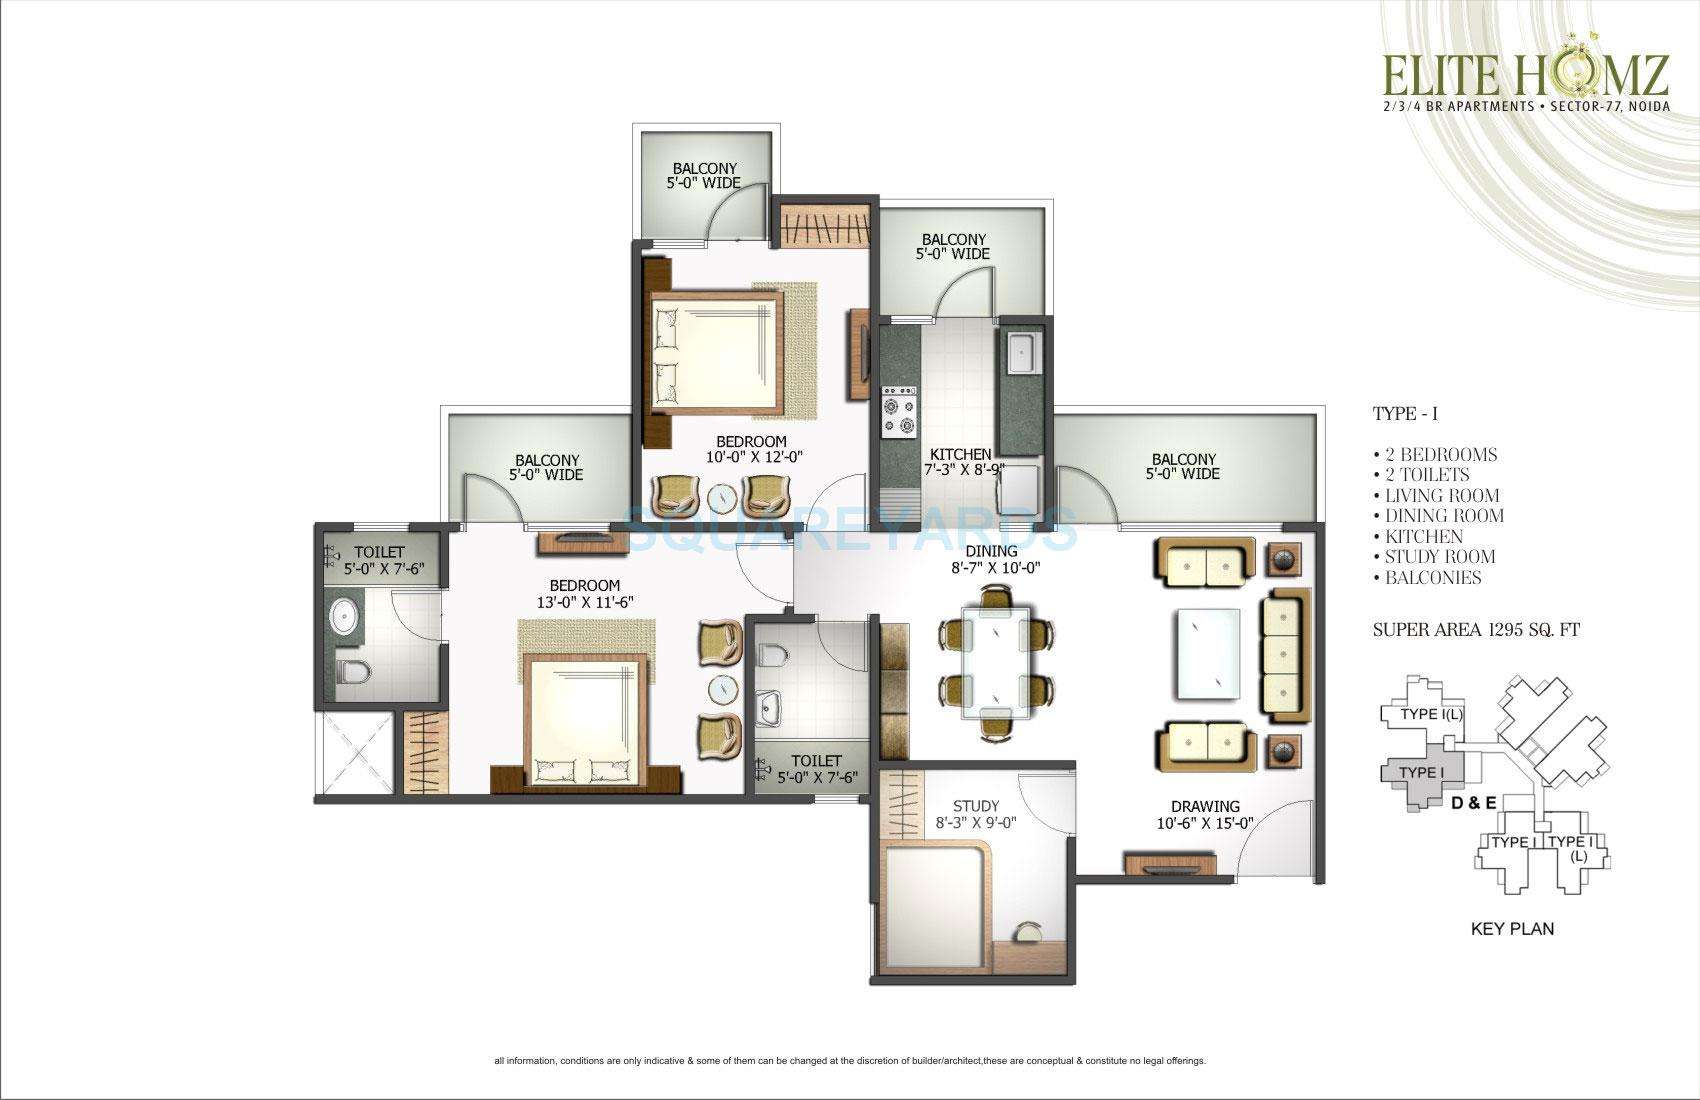 2 BHK 1295 Sq. Ft. Apartment in H R Buildcon Elite Homz